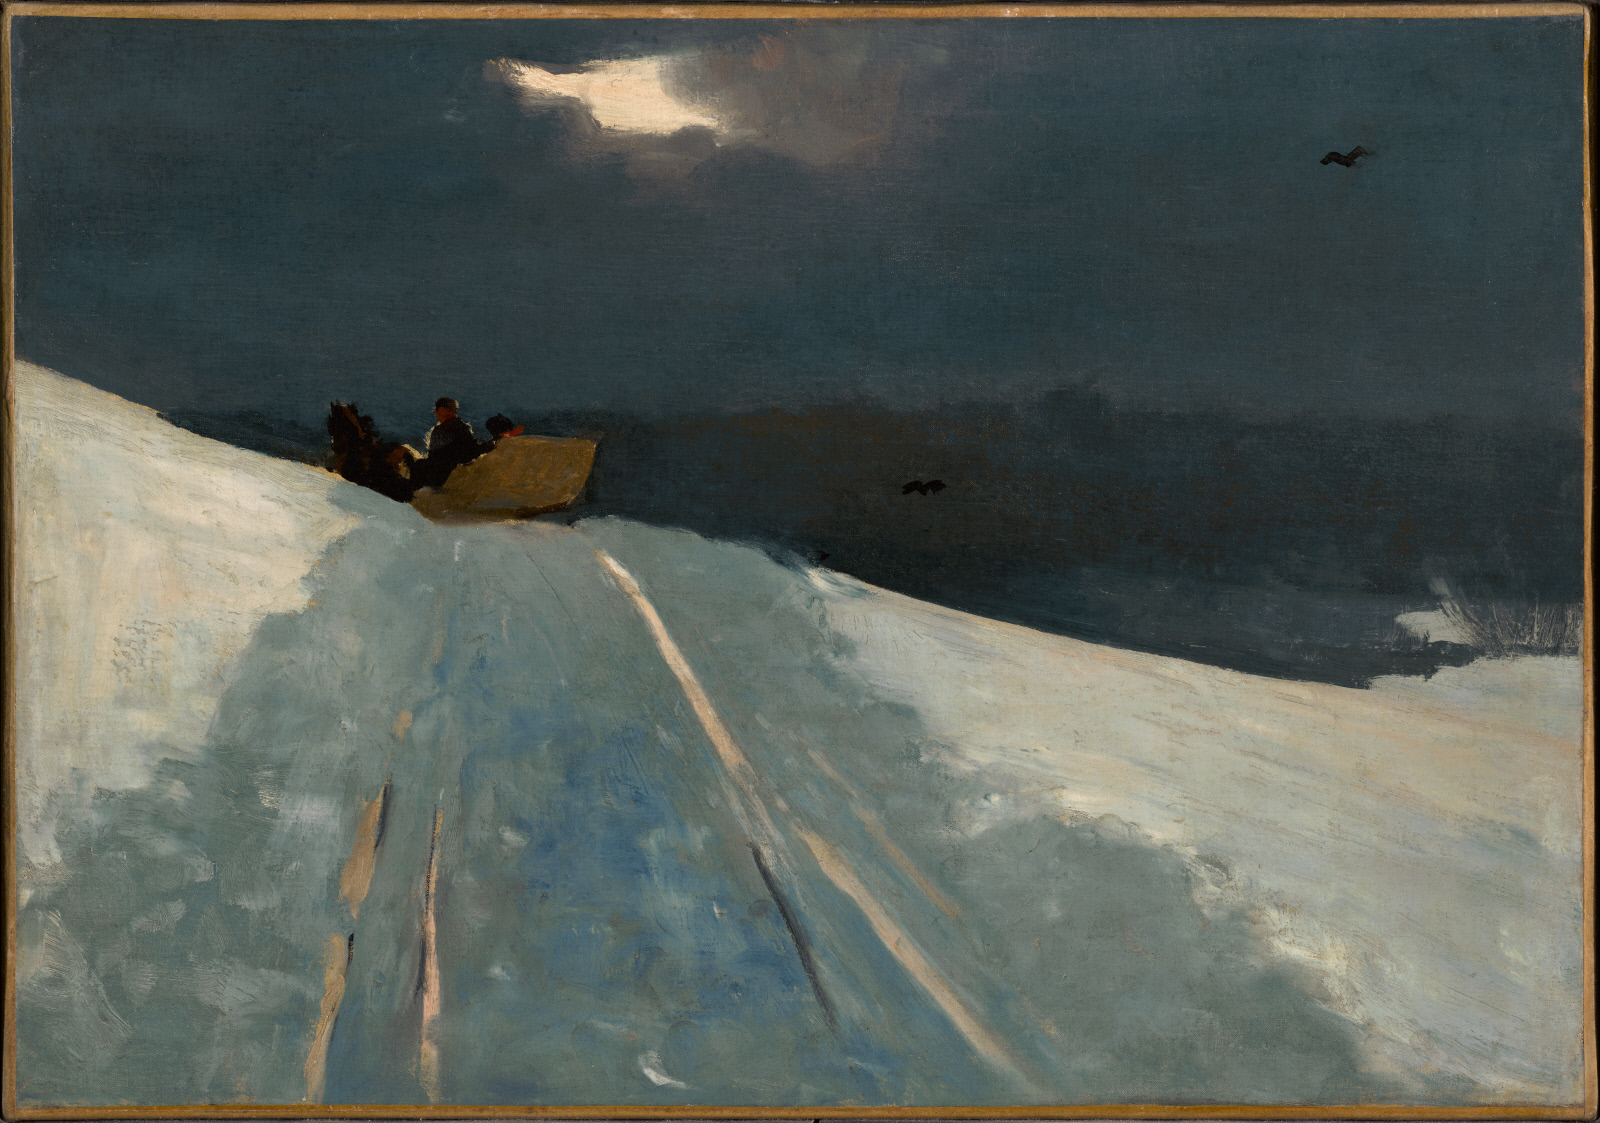 雪橇之旅 by 未知艺术家  - c. 1890–1895 - 35.7 x 51 cm 